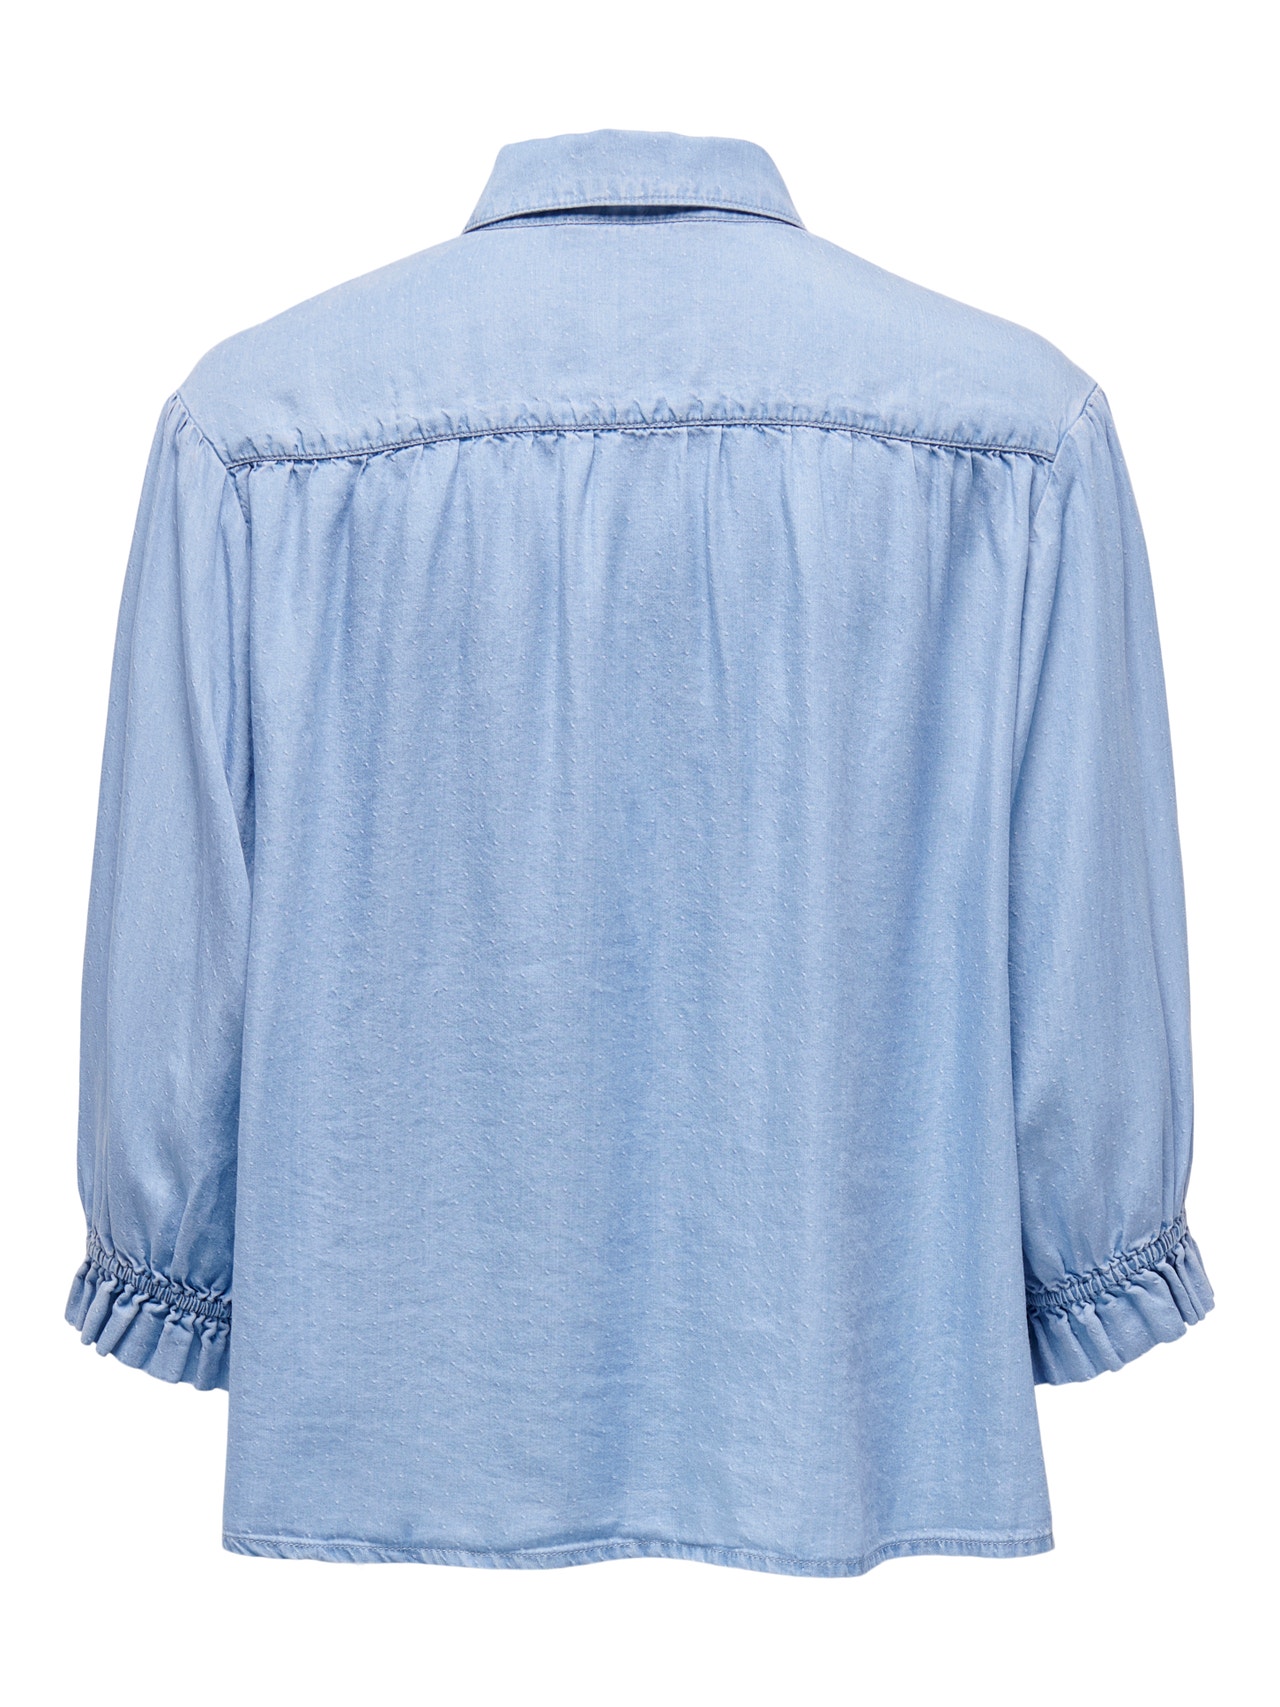 ONLY Chemises Relaxed Fit Col chemise Poignets ou bas élastiqués -Light Blue Denim - 15280730